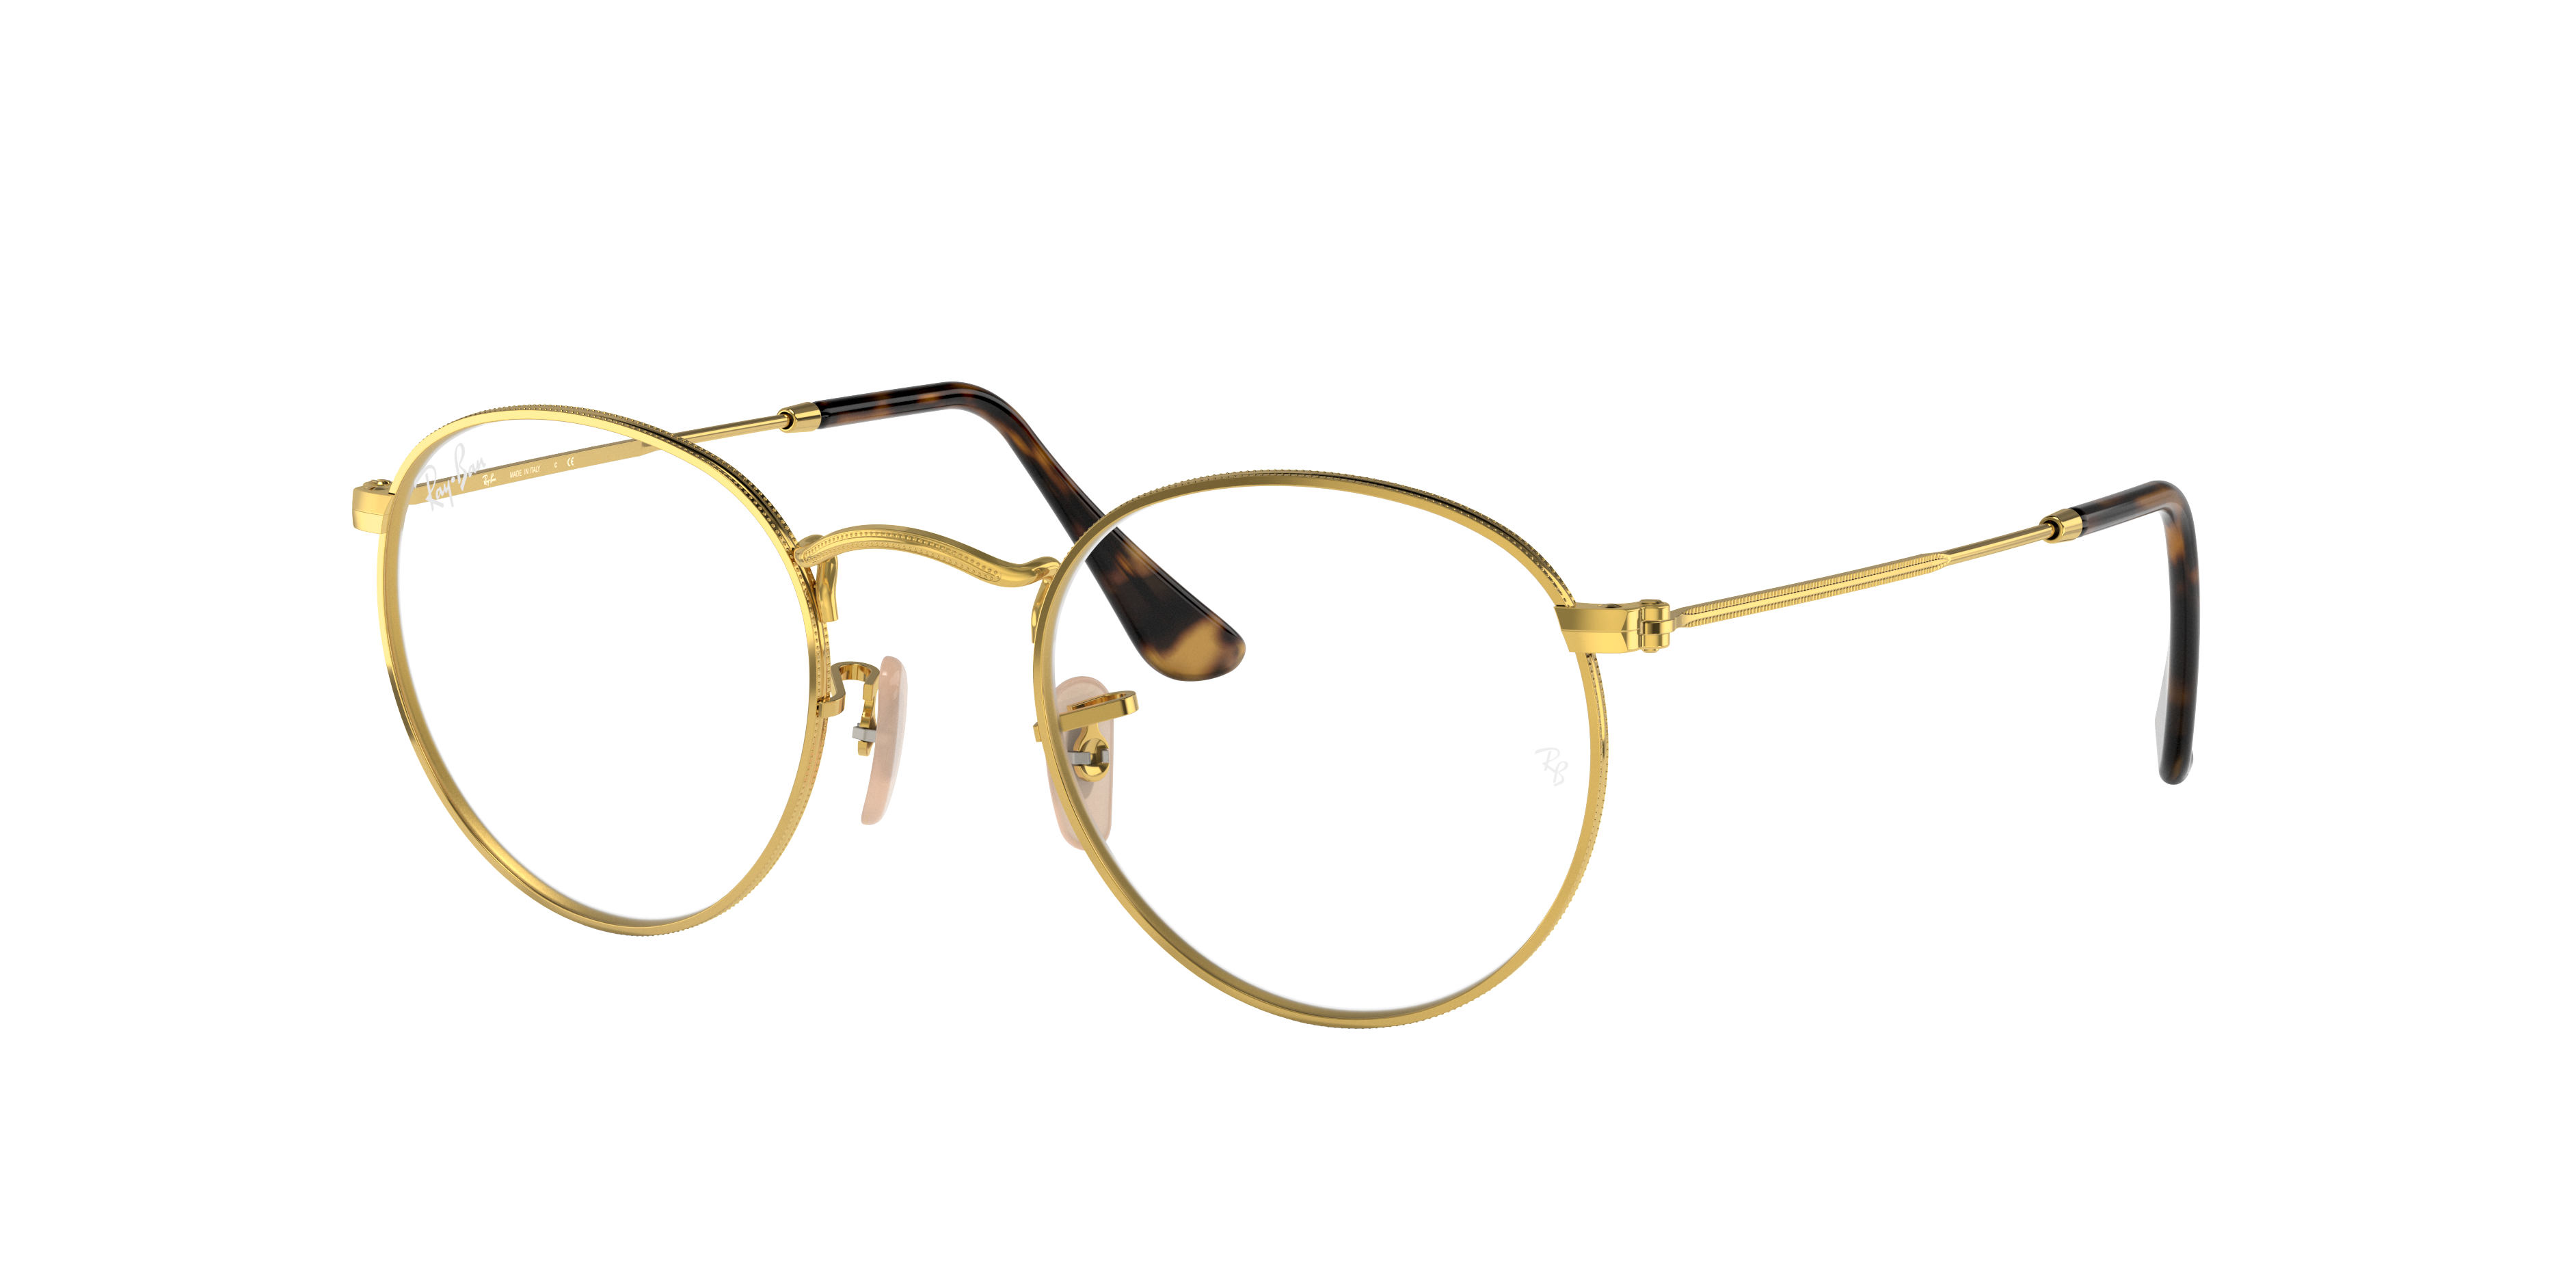 Ray-Ban eyeglasses Round Metal Optics 